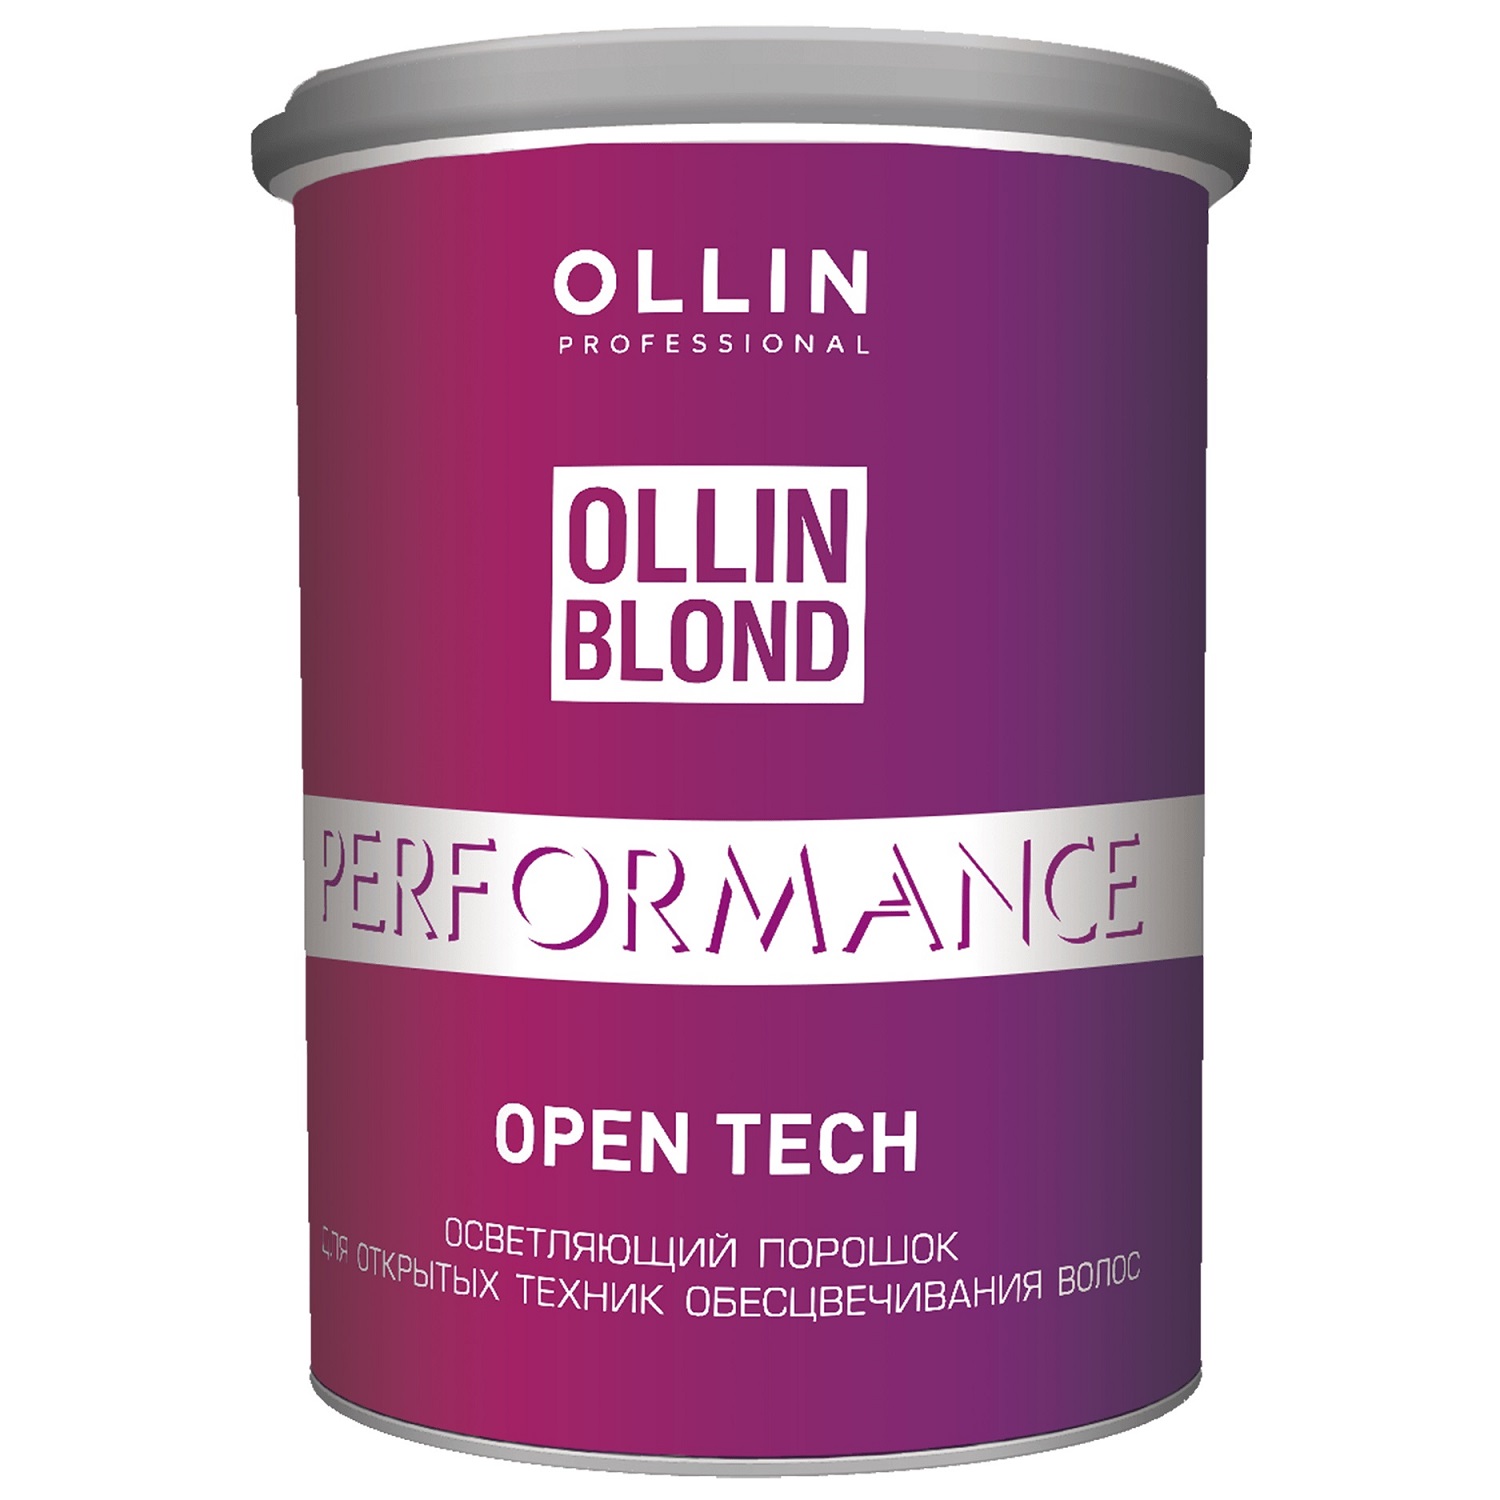 Ollin Professional Осветляющий порошок Open Tech для открытых техник обесцвечивания волос, 500 г (Ollin Professional, Ollin Blond)